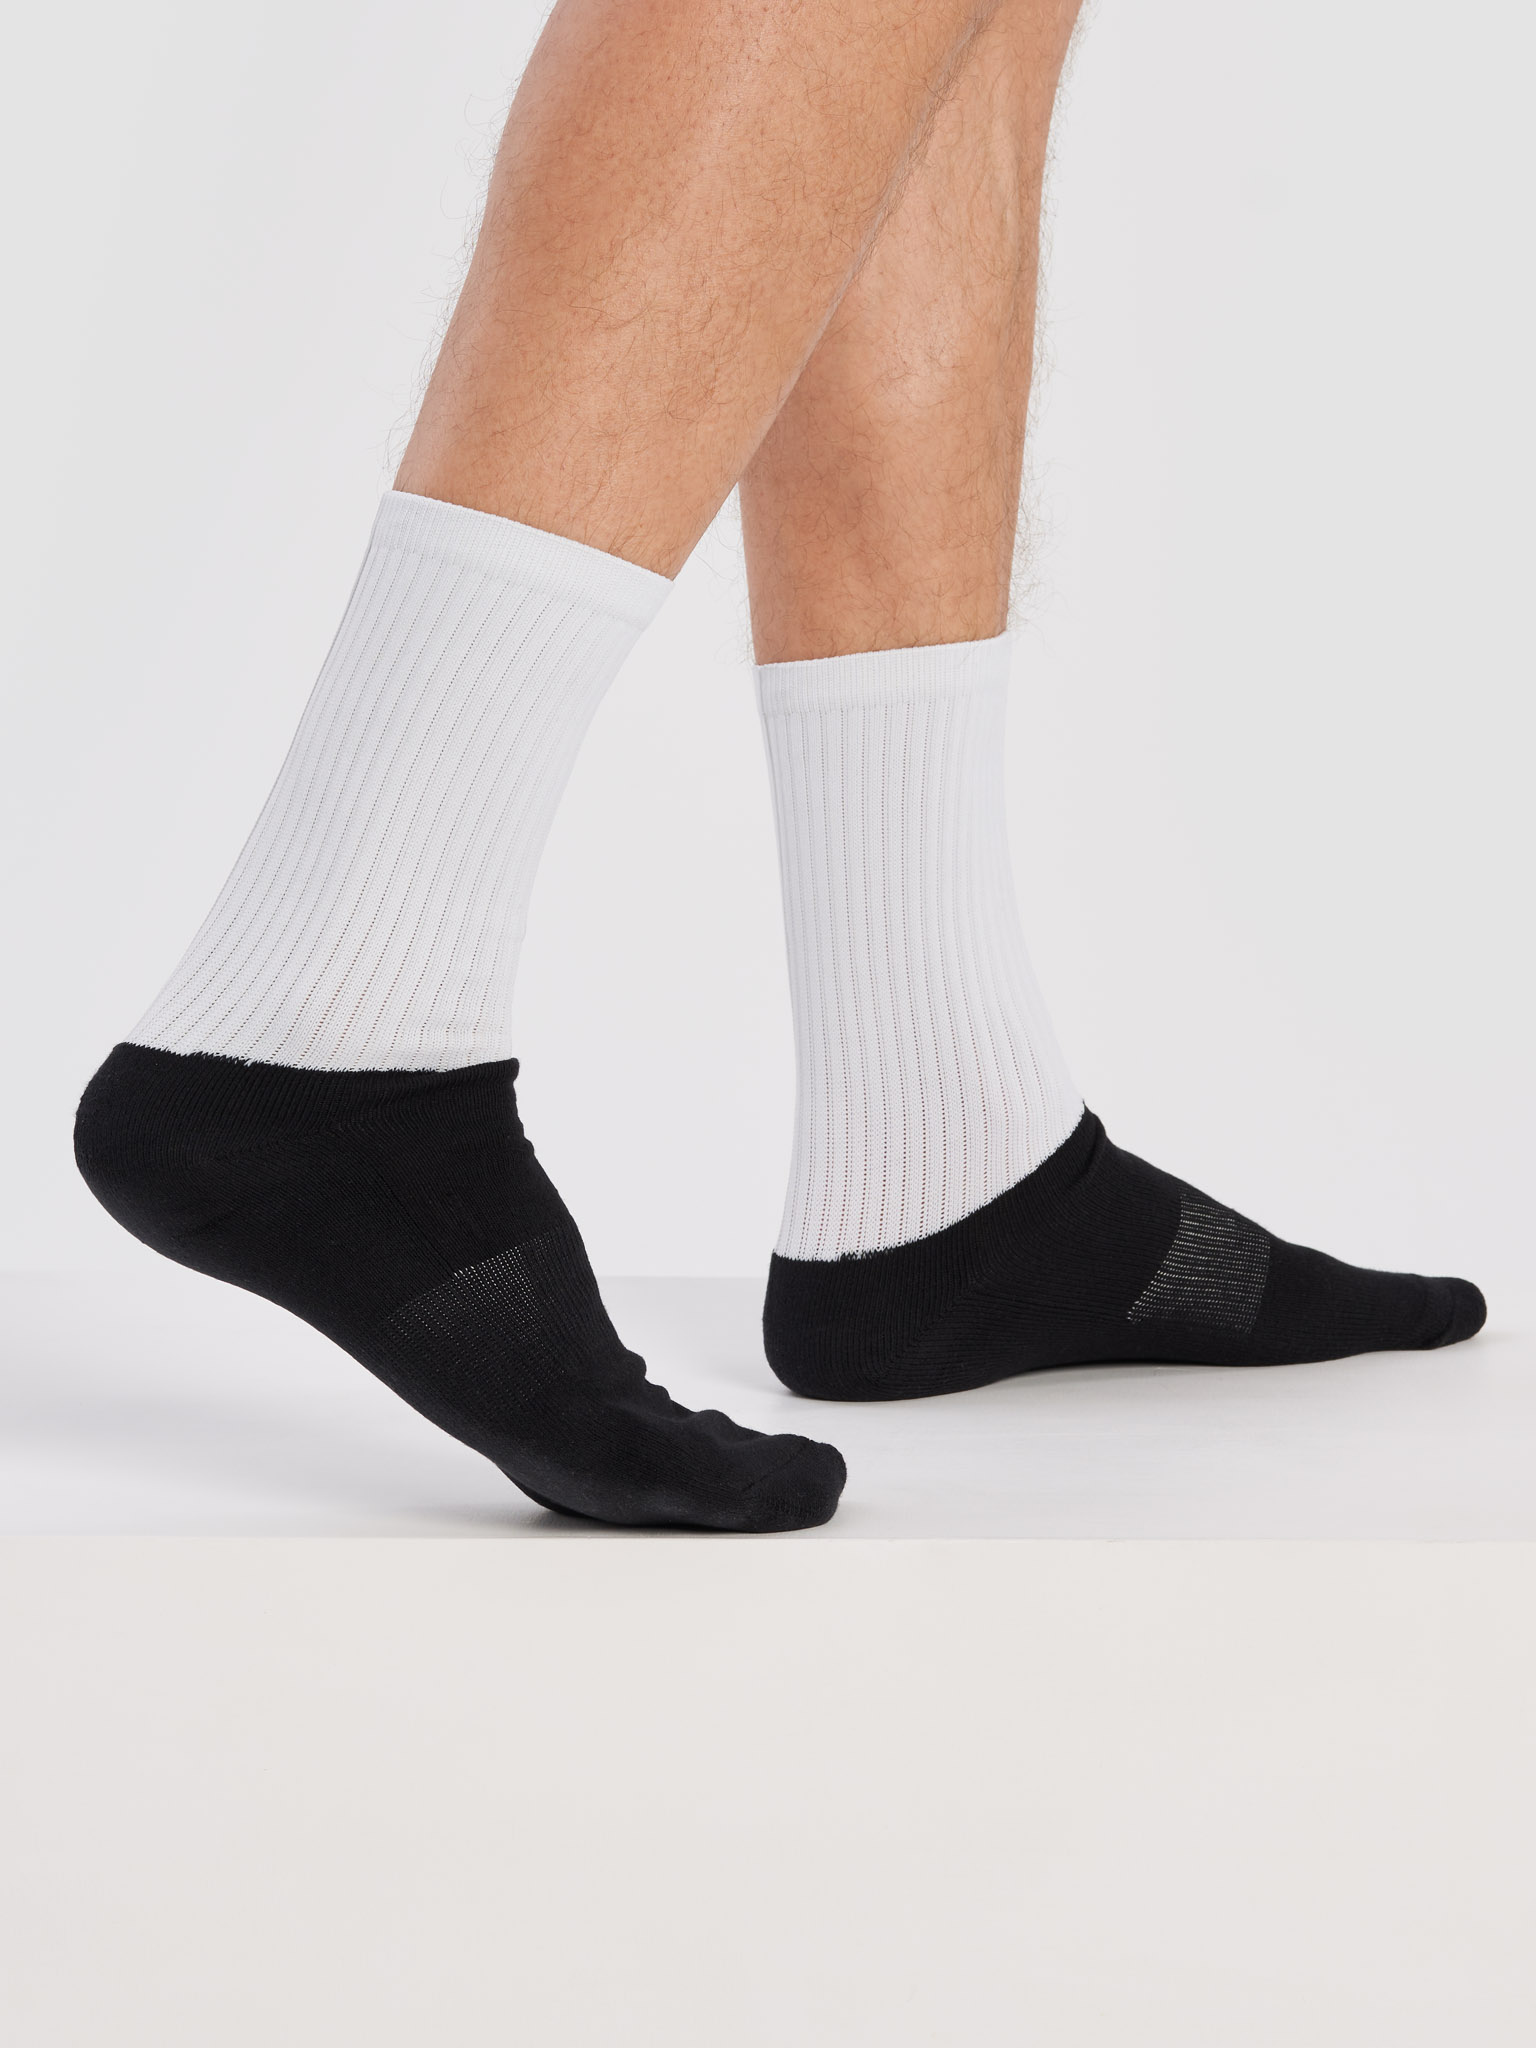 Black Foot Sublimated Socks